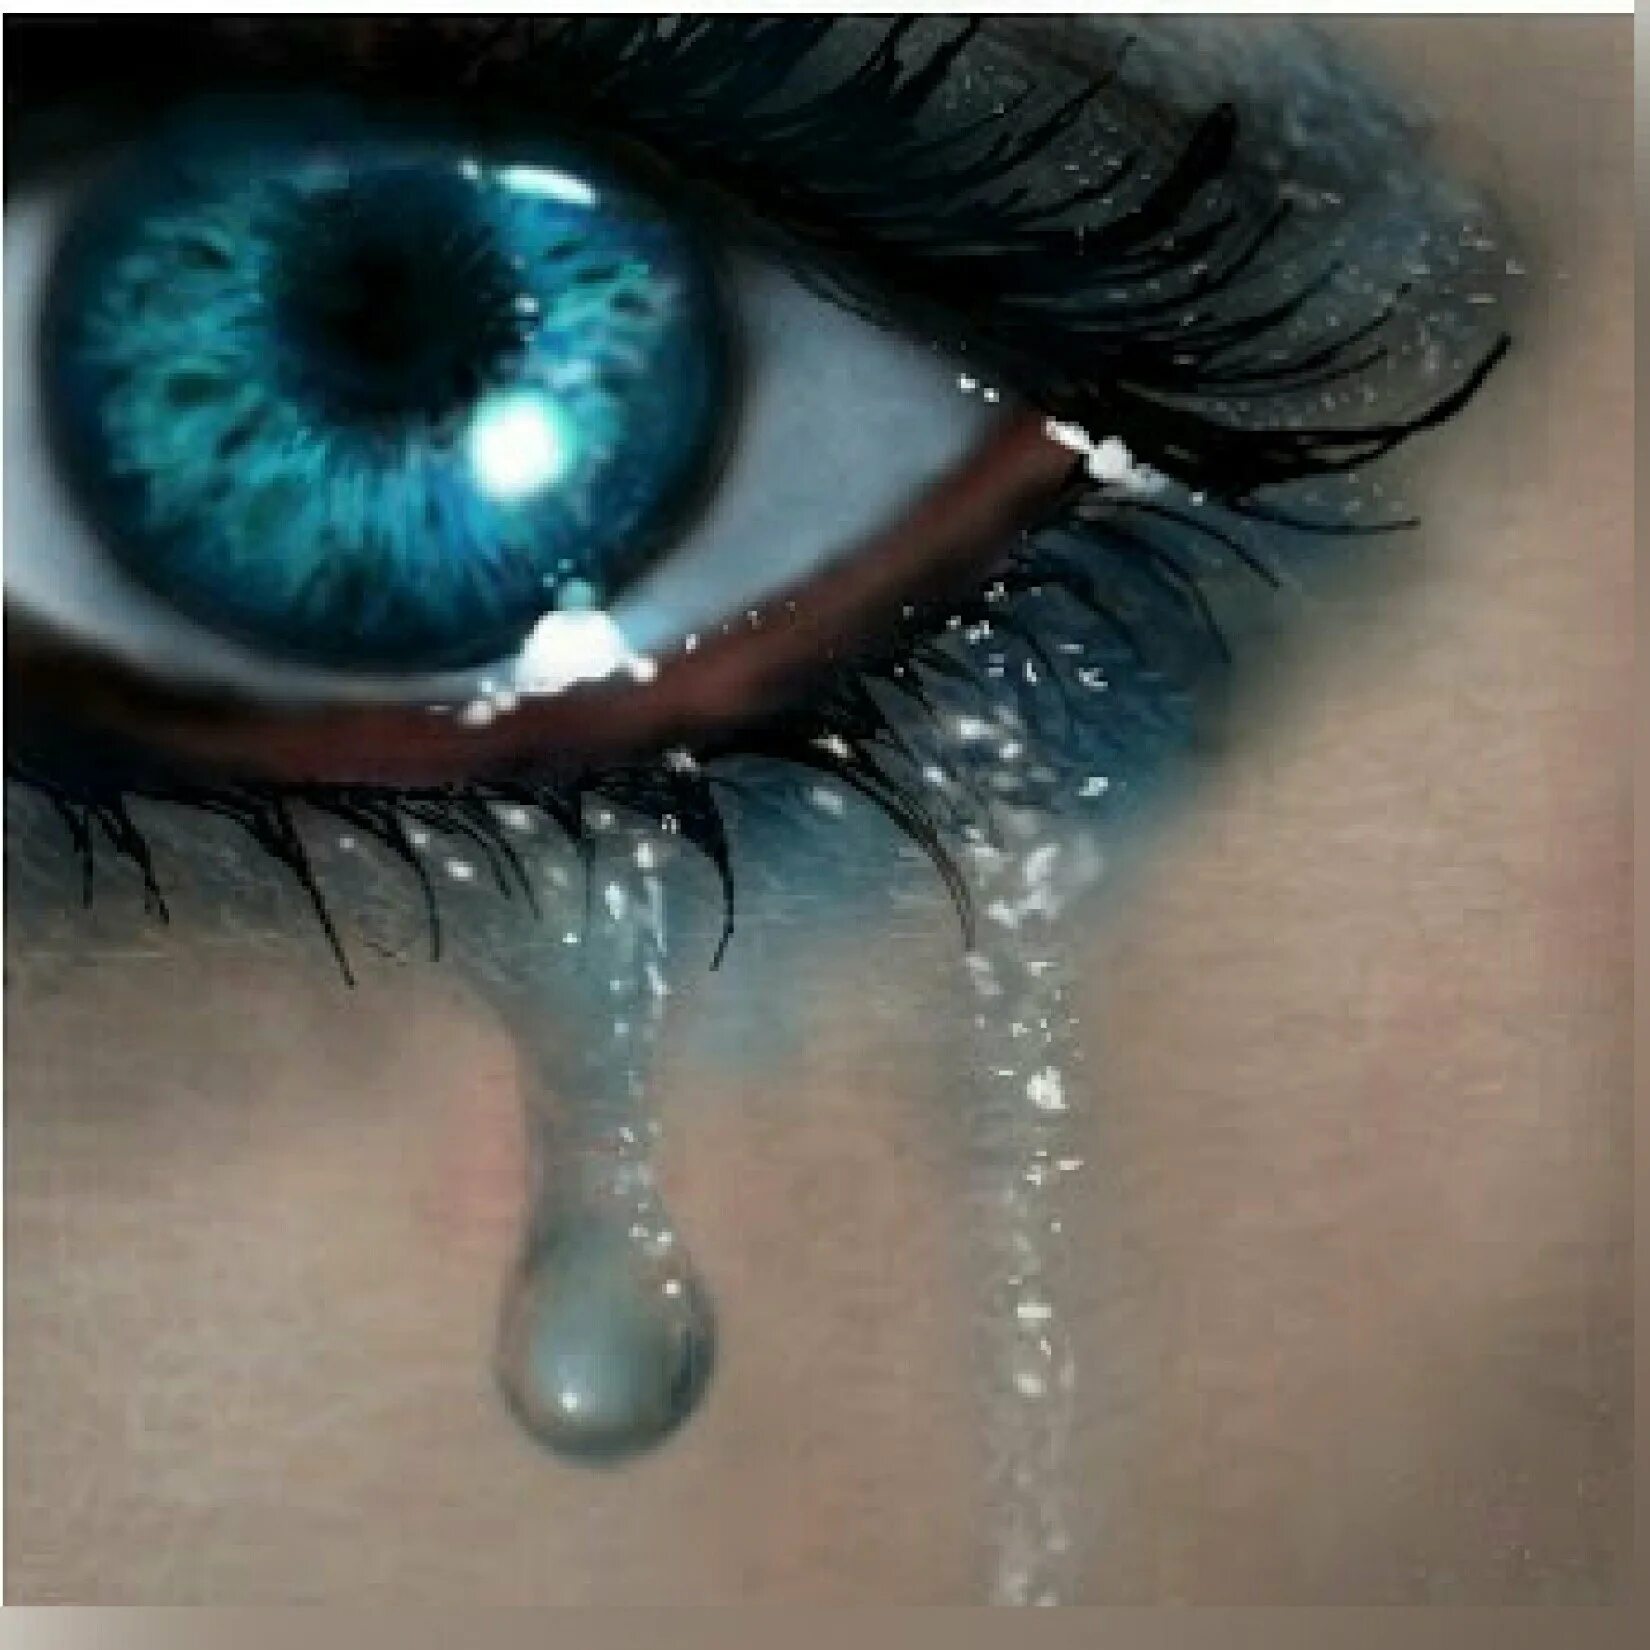 Плачущий глазки. Голубые глаза со слезами. Плачущий глаз. Слезы из голубых глаз. Глаз со слезой.